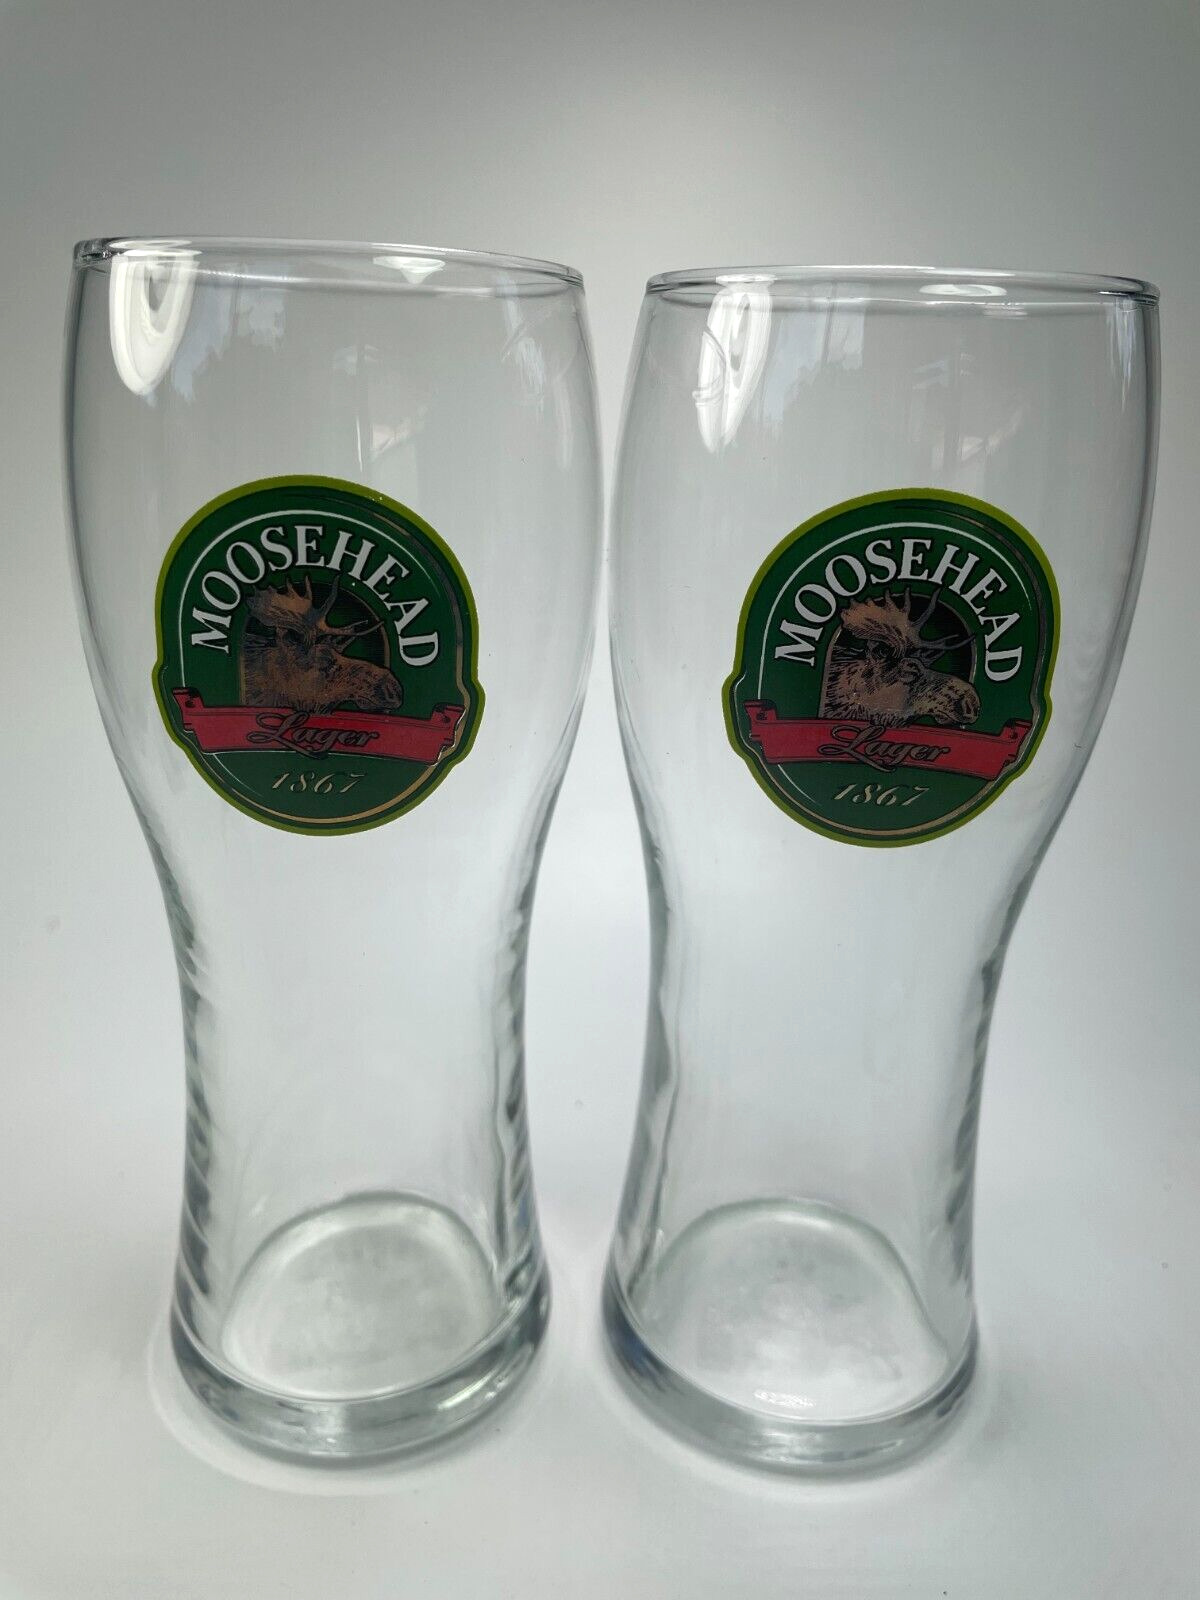 Moosehead Lager Beer Glasses Embossed Canadian 16 oz Moose Image 2 Cups B32